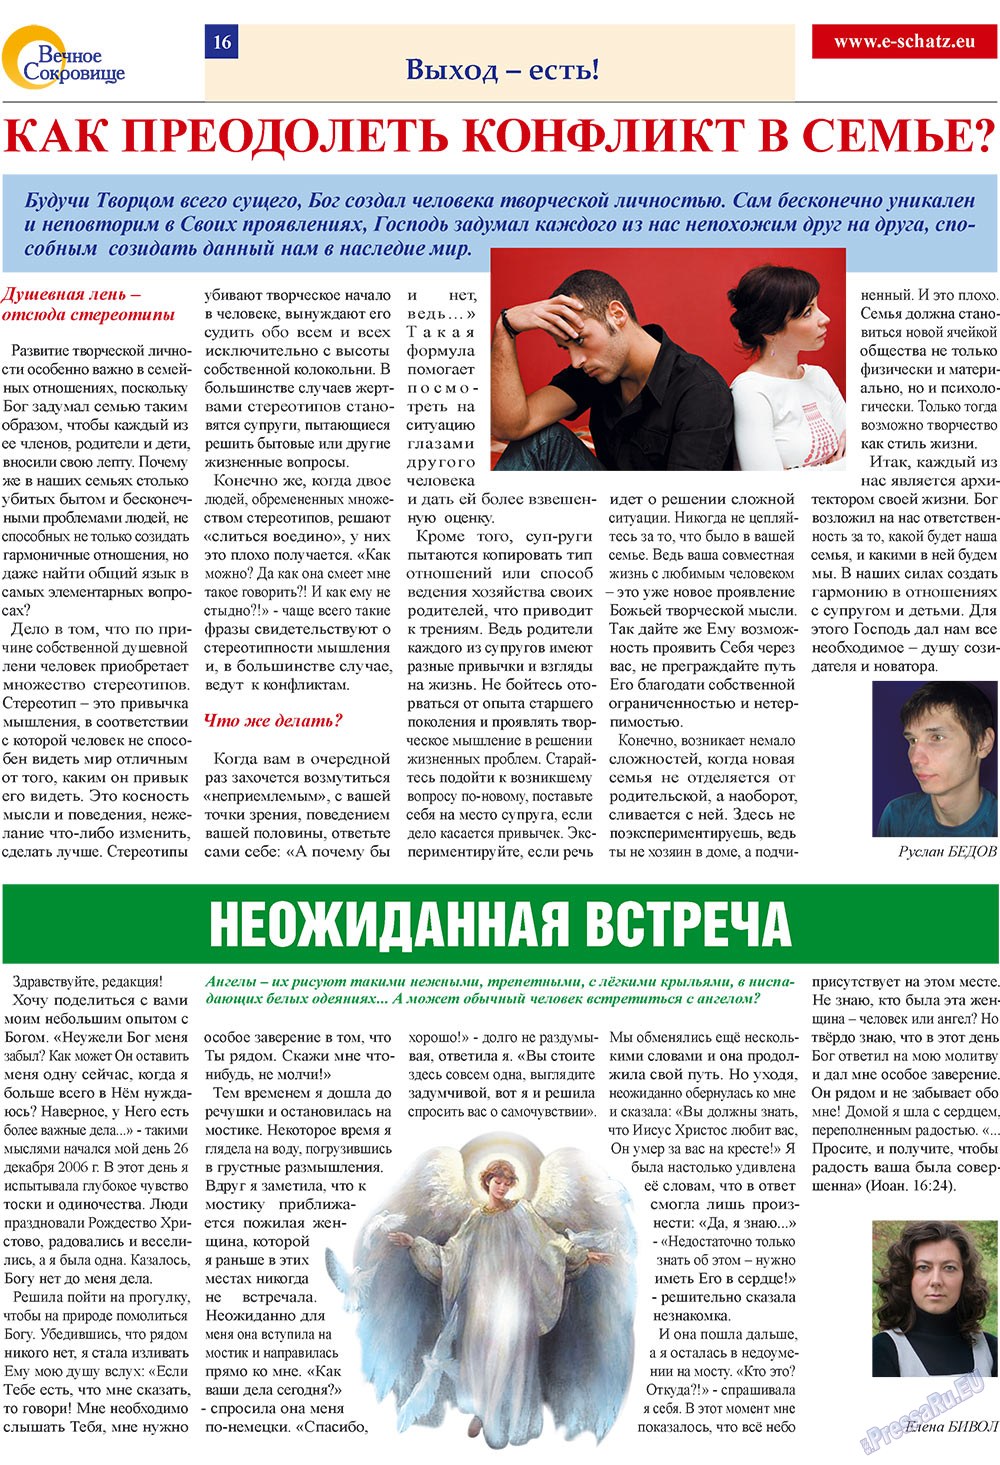 Вечное сокровище, газета. 2009 №1 стр.16